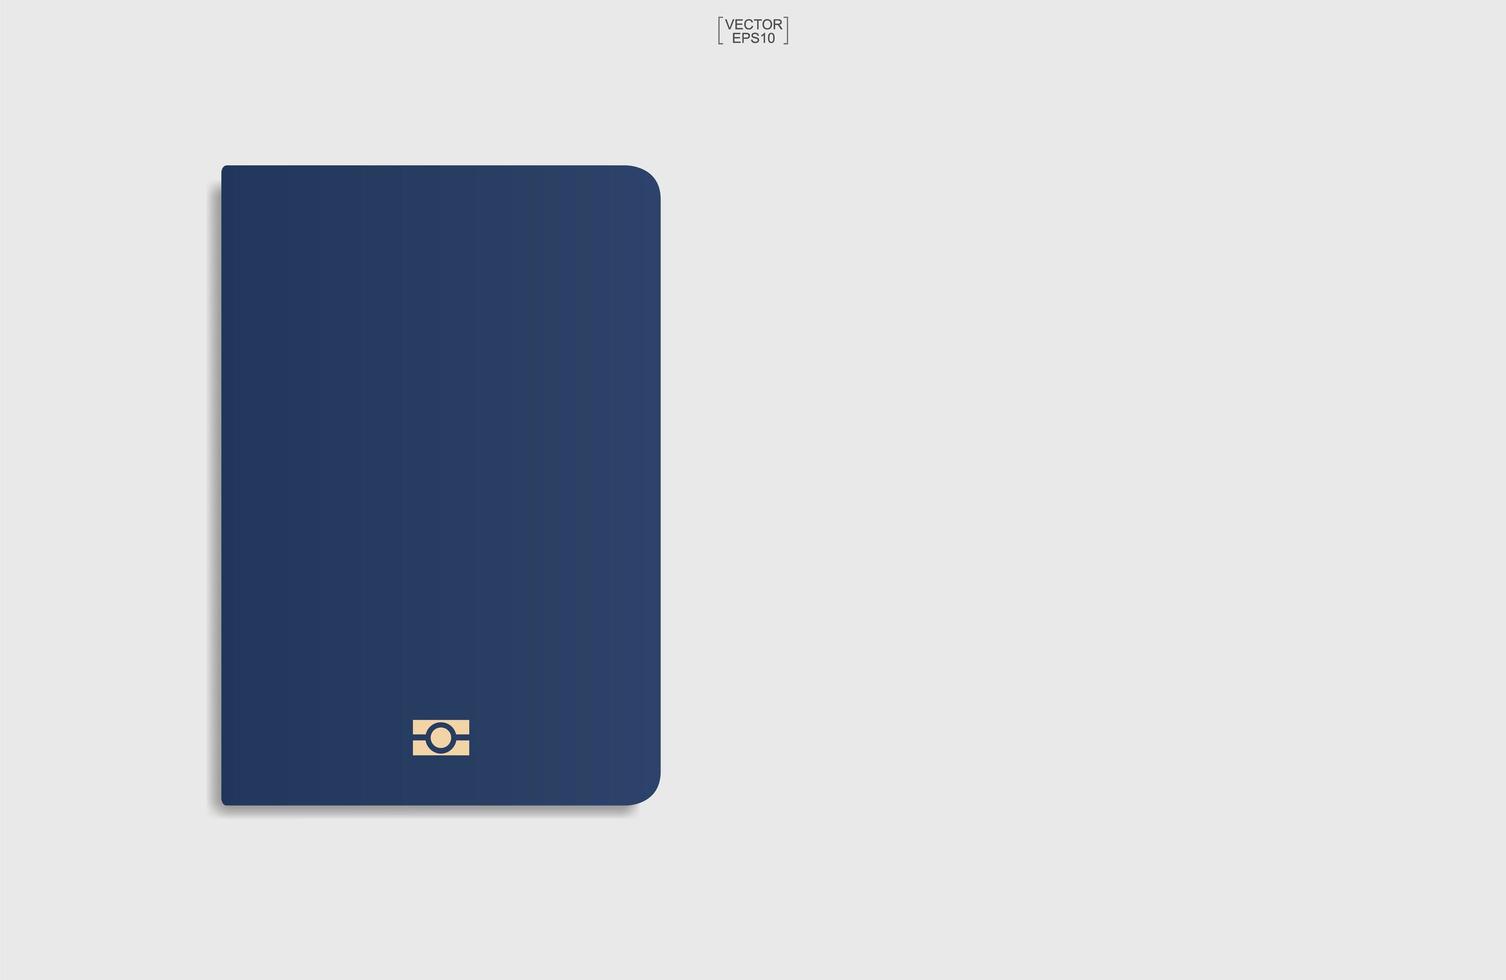 blauwe paspoortachtergrond op witte achtergrond. vector. vector